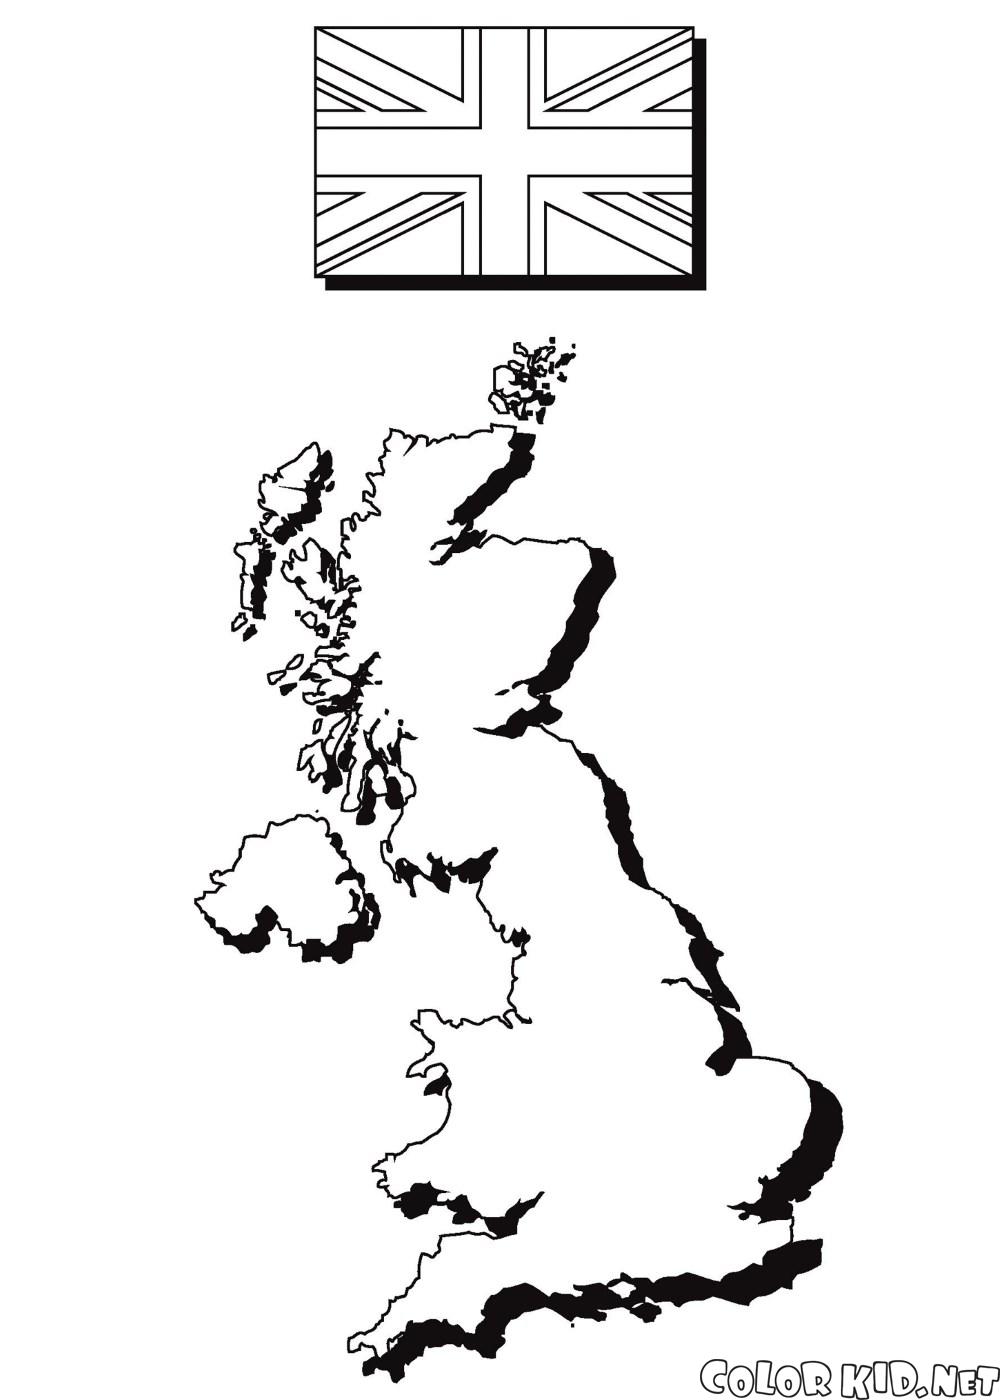 O mapa ea bandeira de Inglaterra